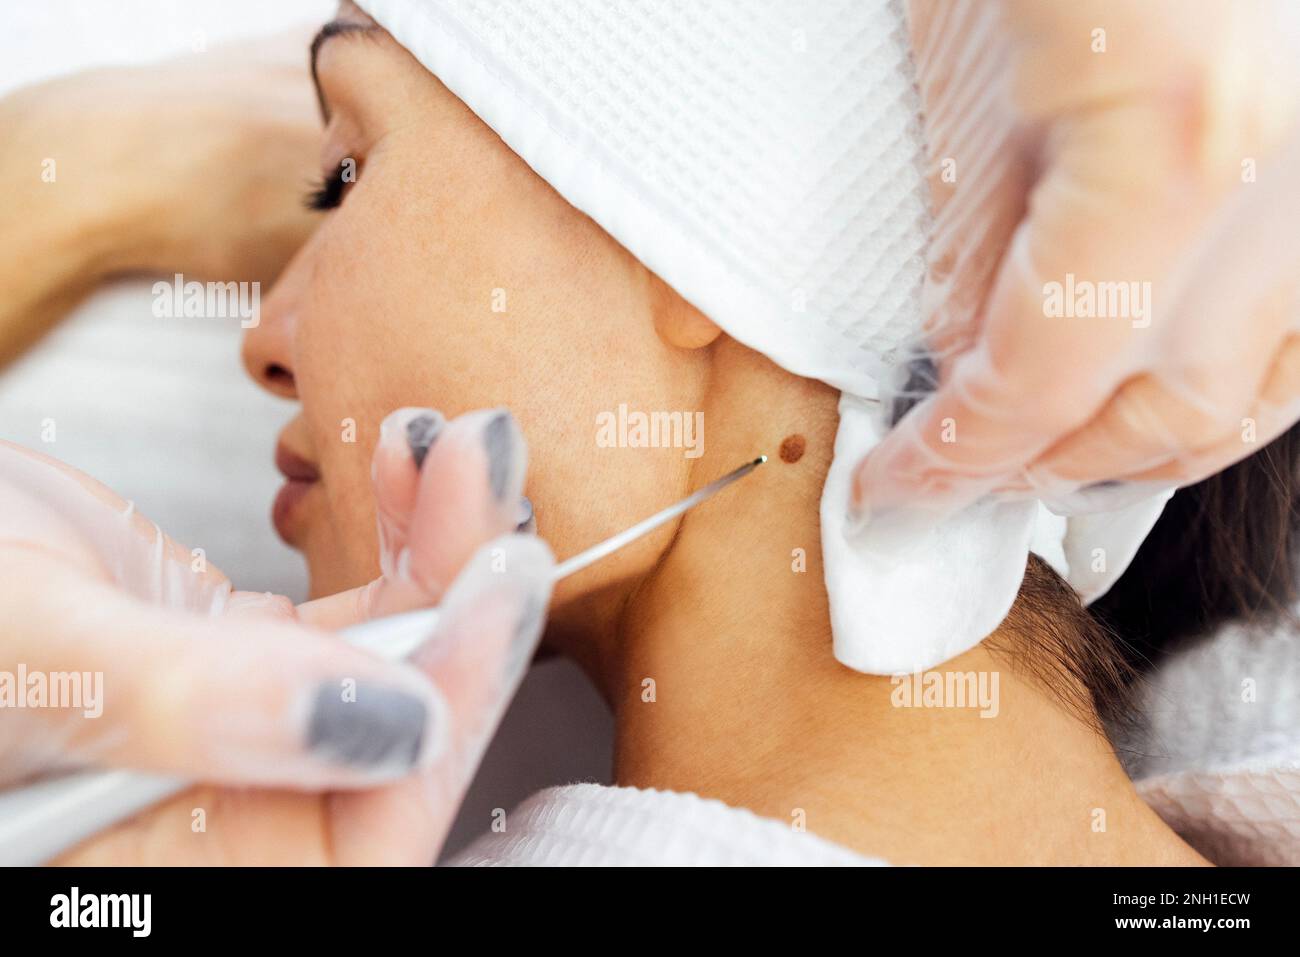 Une belle jeune femme caucasienne fait une procédure d'enlèvement de mole sur son cou dans une clinique dermatologique cosmétique de beauté moderne. Traite les grains de beauté de la peau Banque D'Images